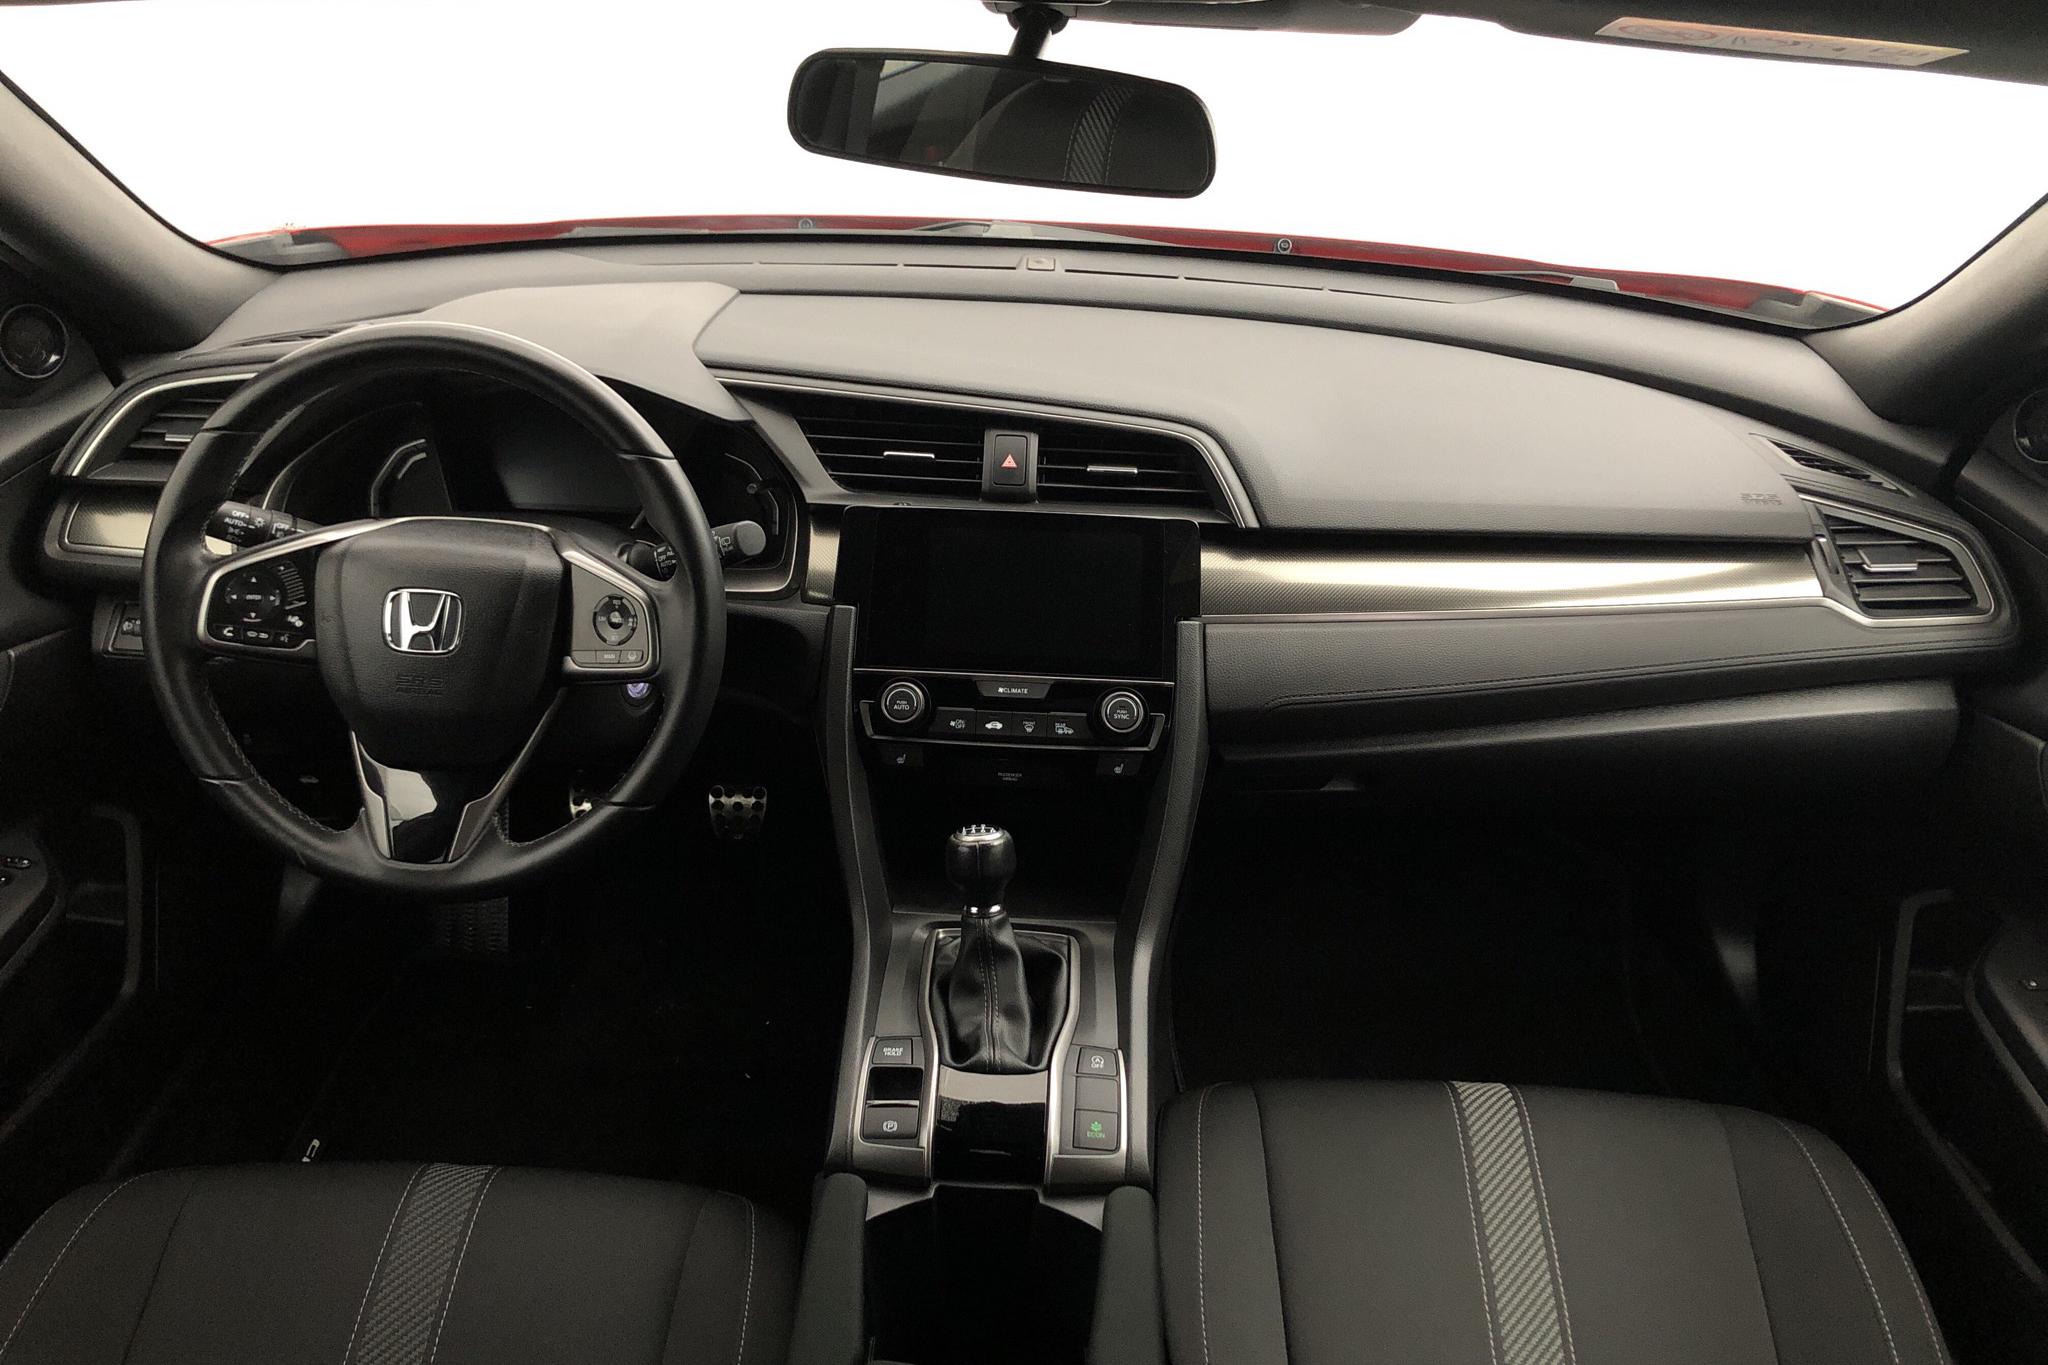 Honda Civic 1.6 i-DTEC 5dr (120hk) - 20 960 km - Manual - red - 2018